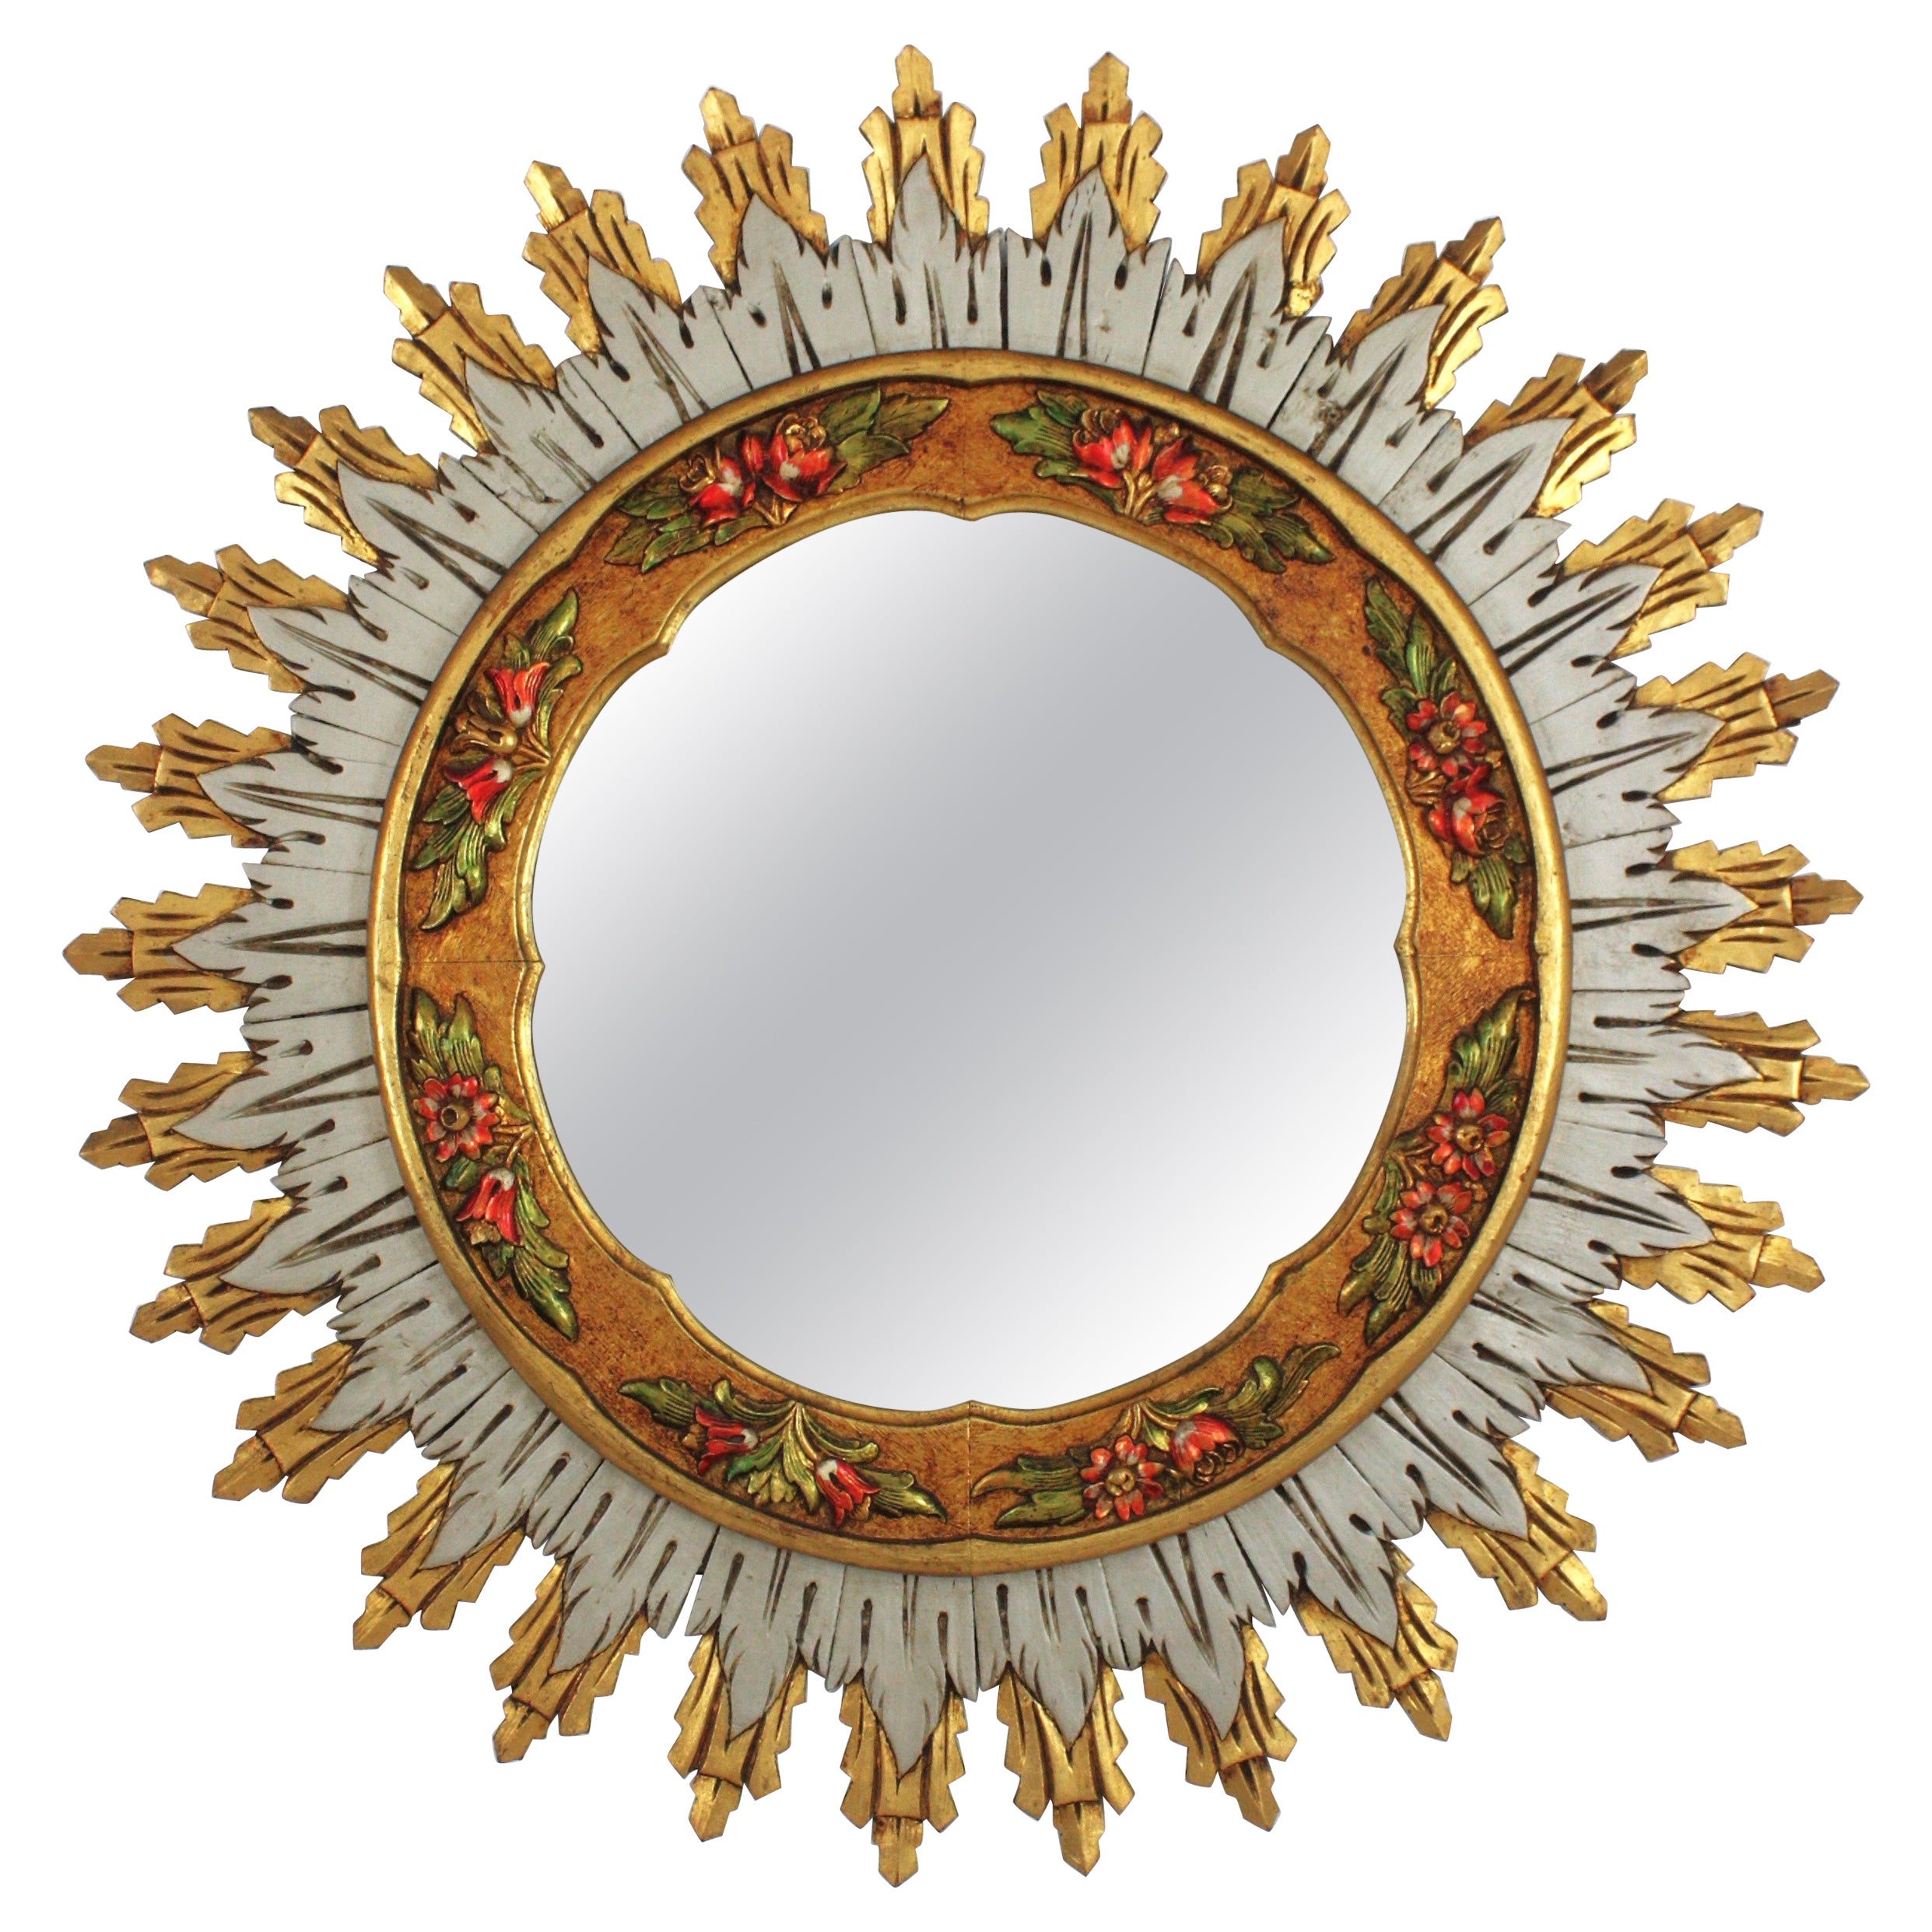 Spanish Baroque XL Sunburst Mirror, Gilt Silvered Wood & Barbola Flower Detail